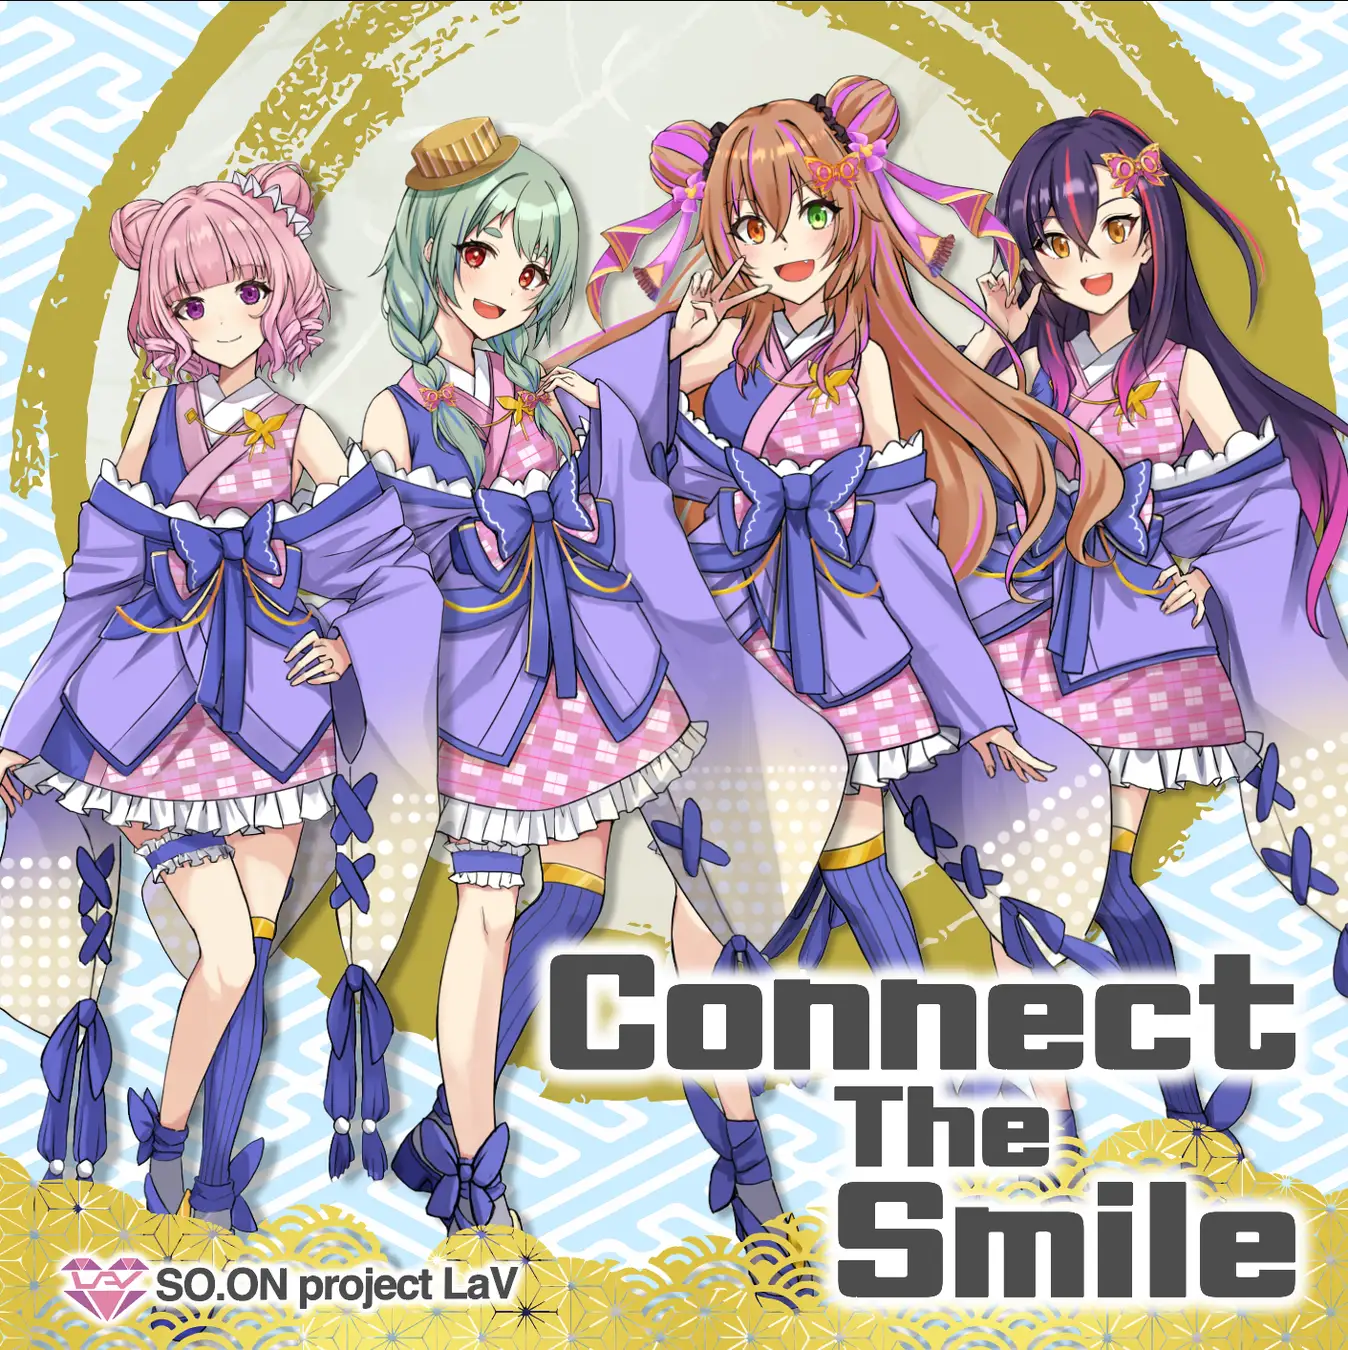 バーチャルアイドル「SO.ON project LaV」、新曲「Connect The Smile」のミュージックビデオ公開